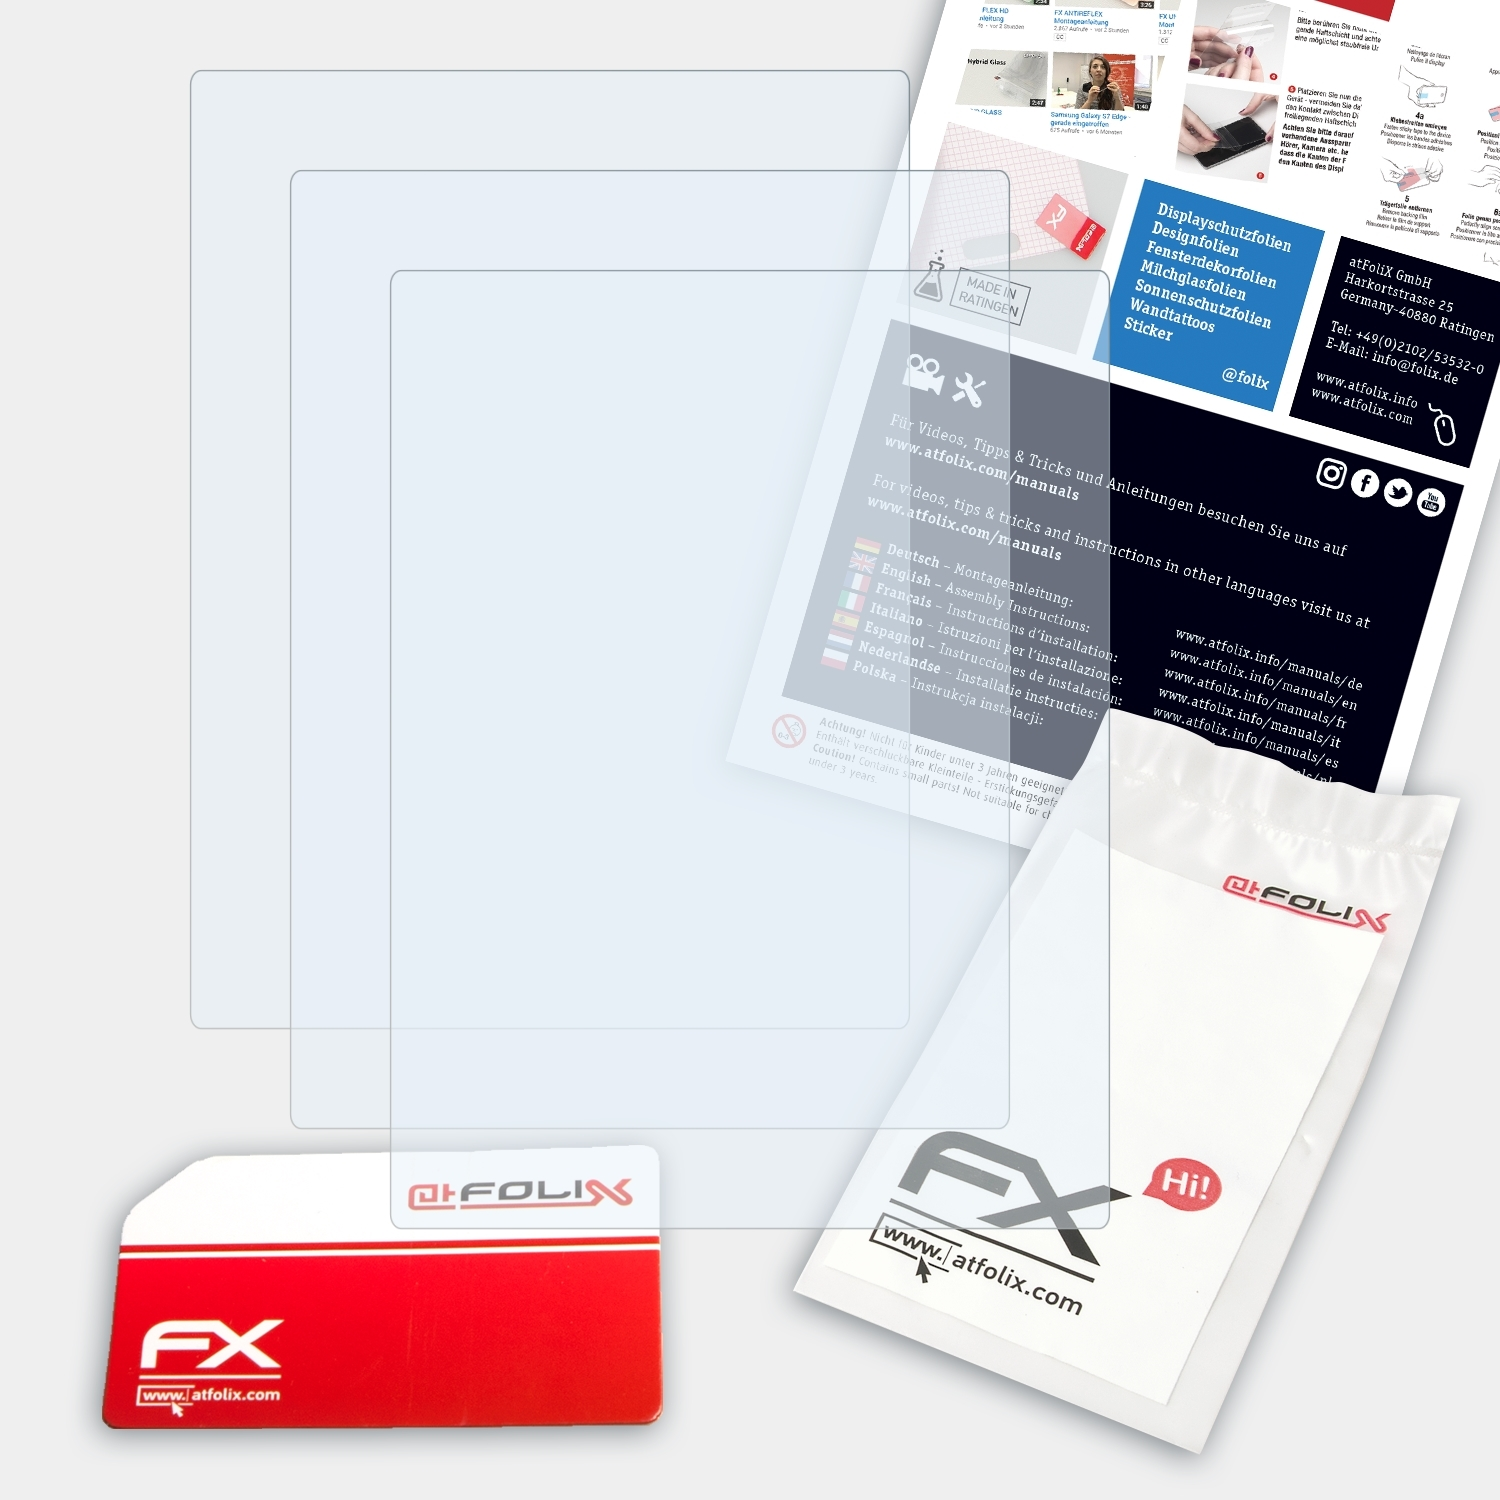 ATFOLIX 3x FX-Clear Ricoh CX2) Displayschutz(für